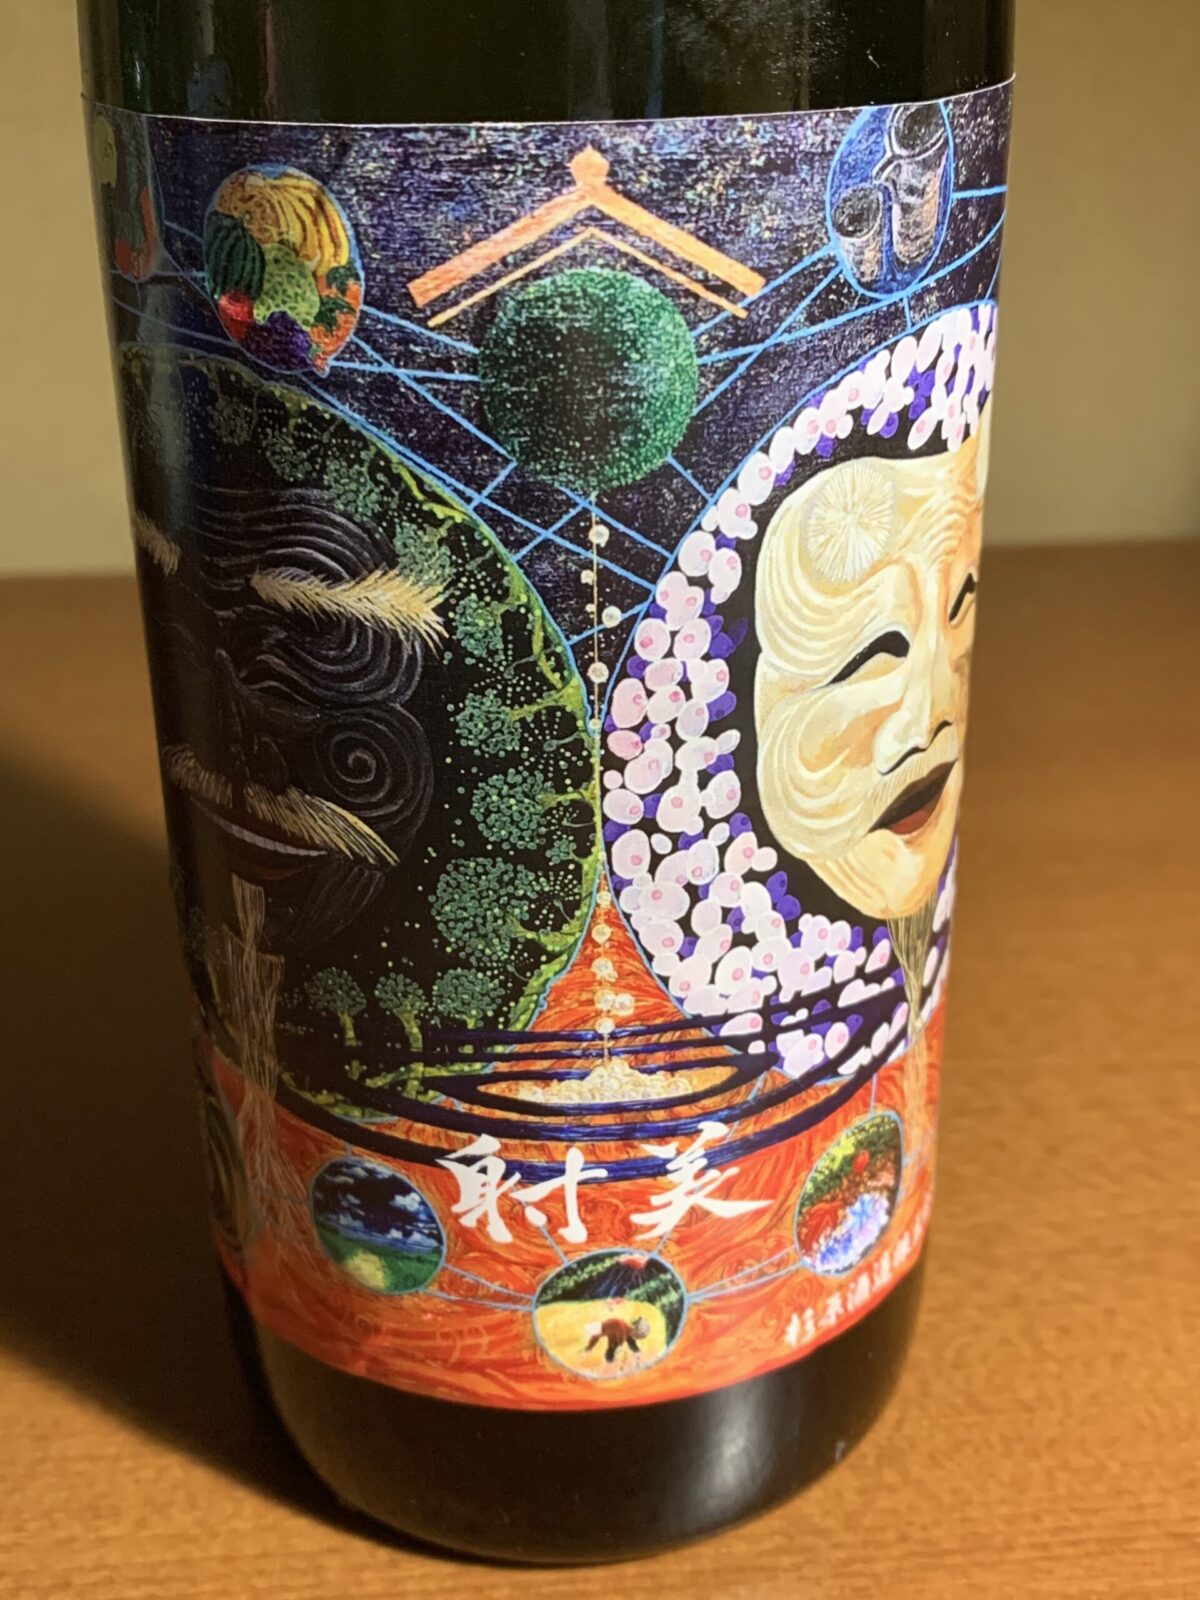 岐阜の幻の酒『射美 特別純米 並行福発酵連鎖』は爽やかな香りと豊淳な甘旨み